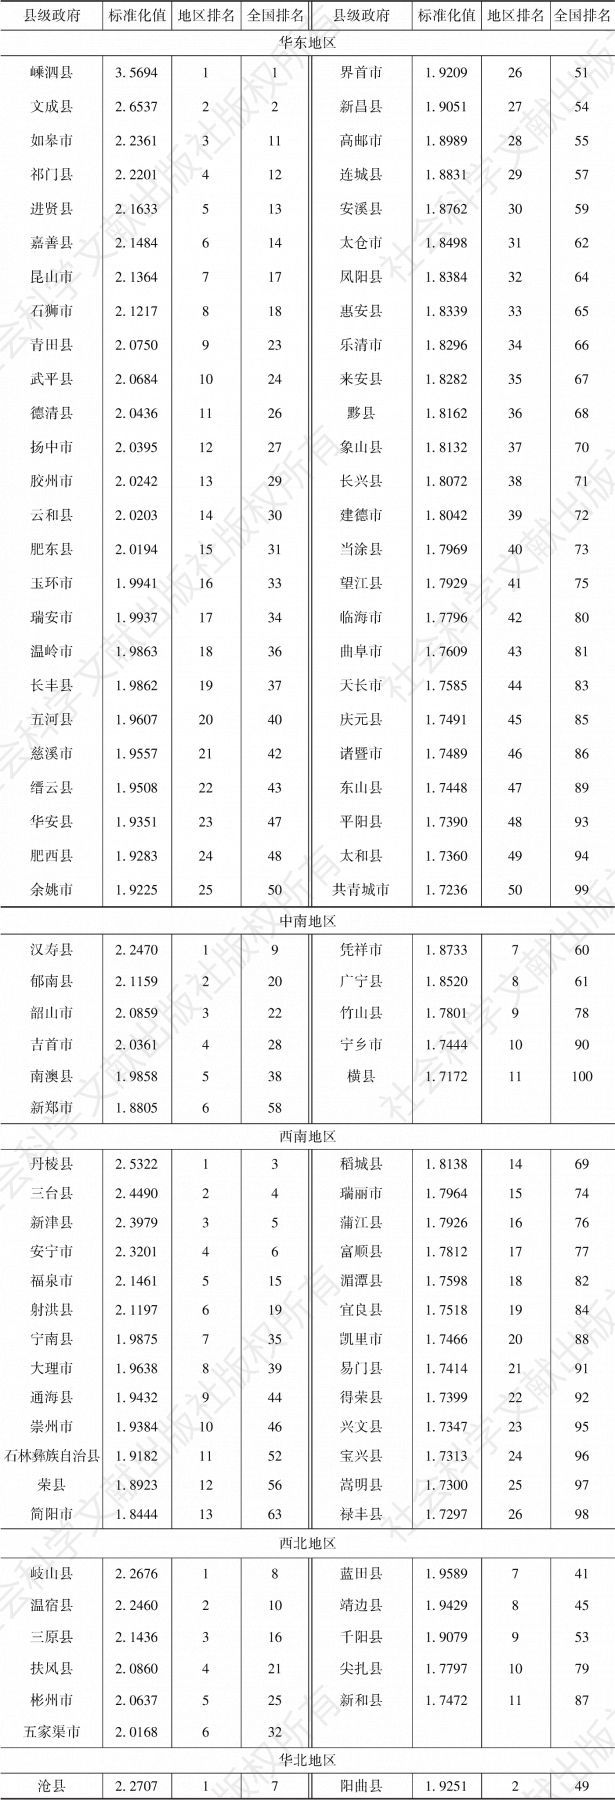 表5-1 2019年中国地方政府效率“百高县”的标准化值及排名